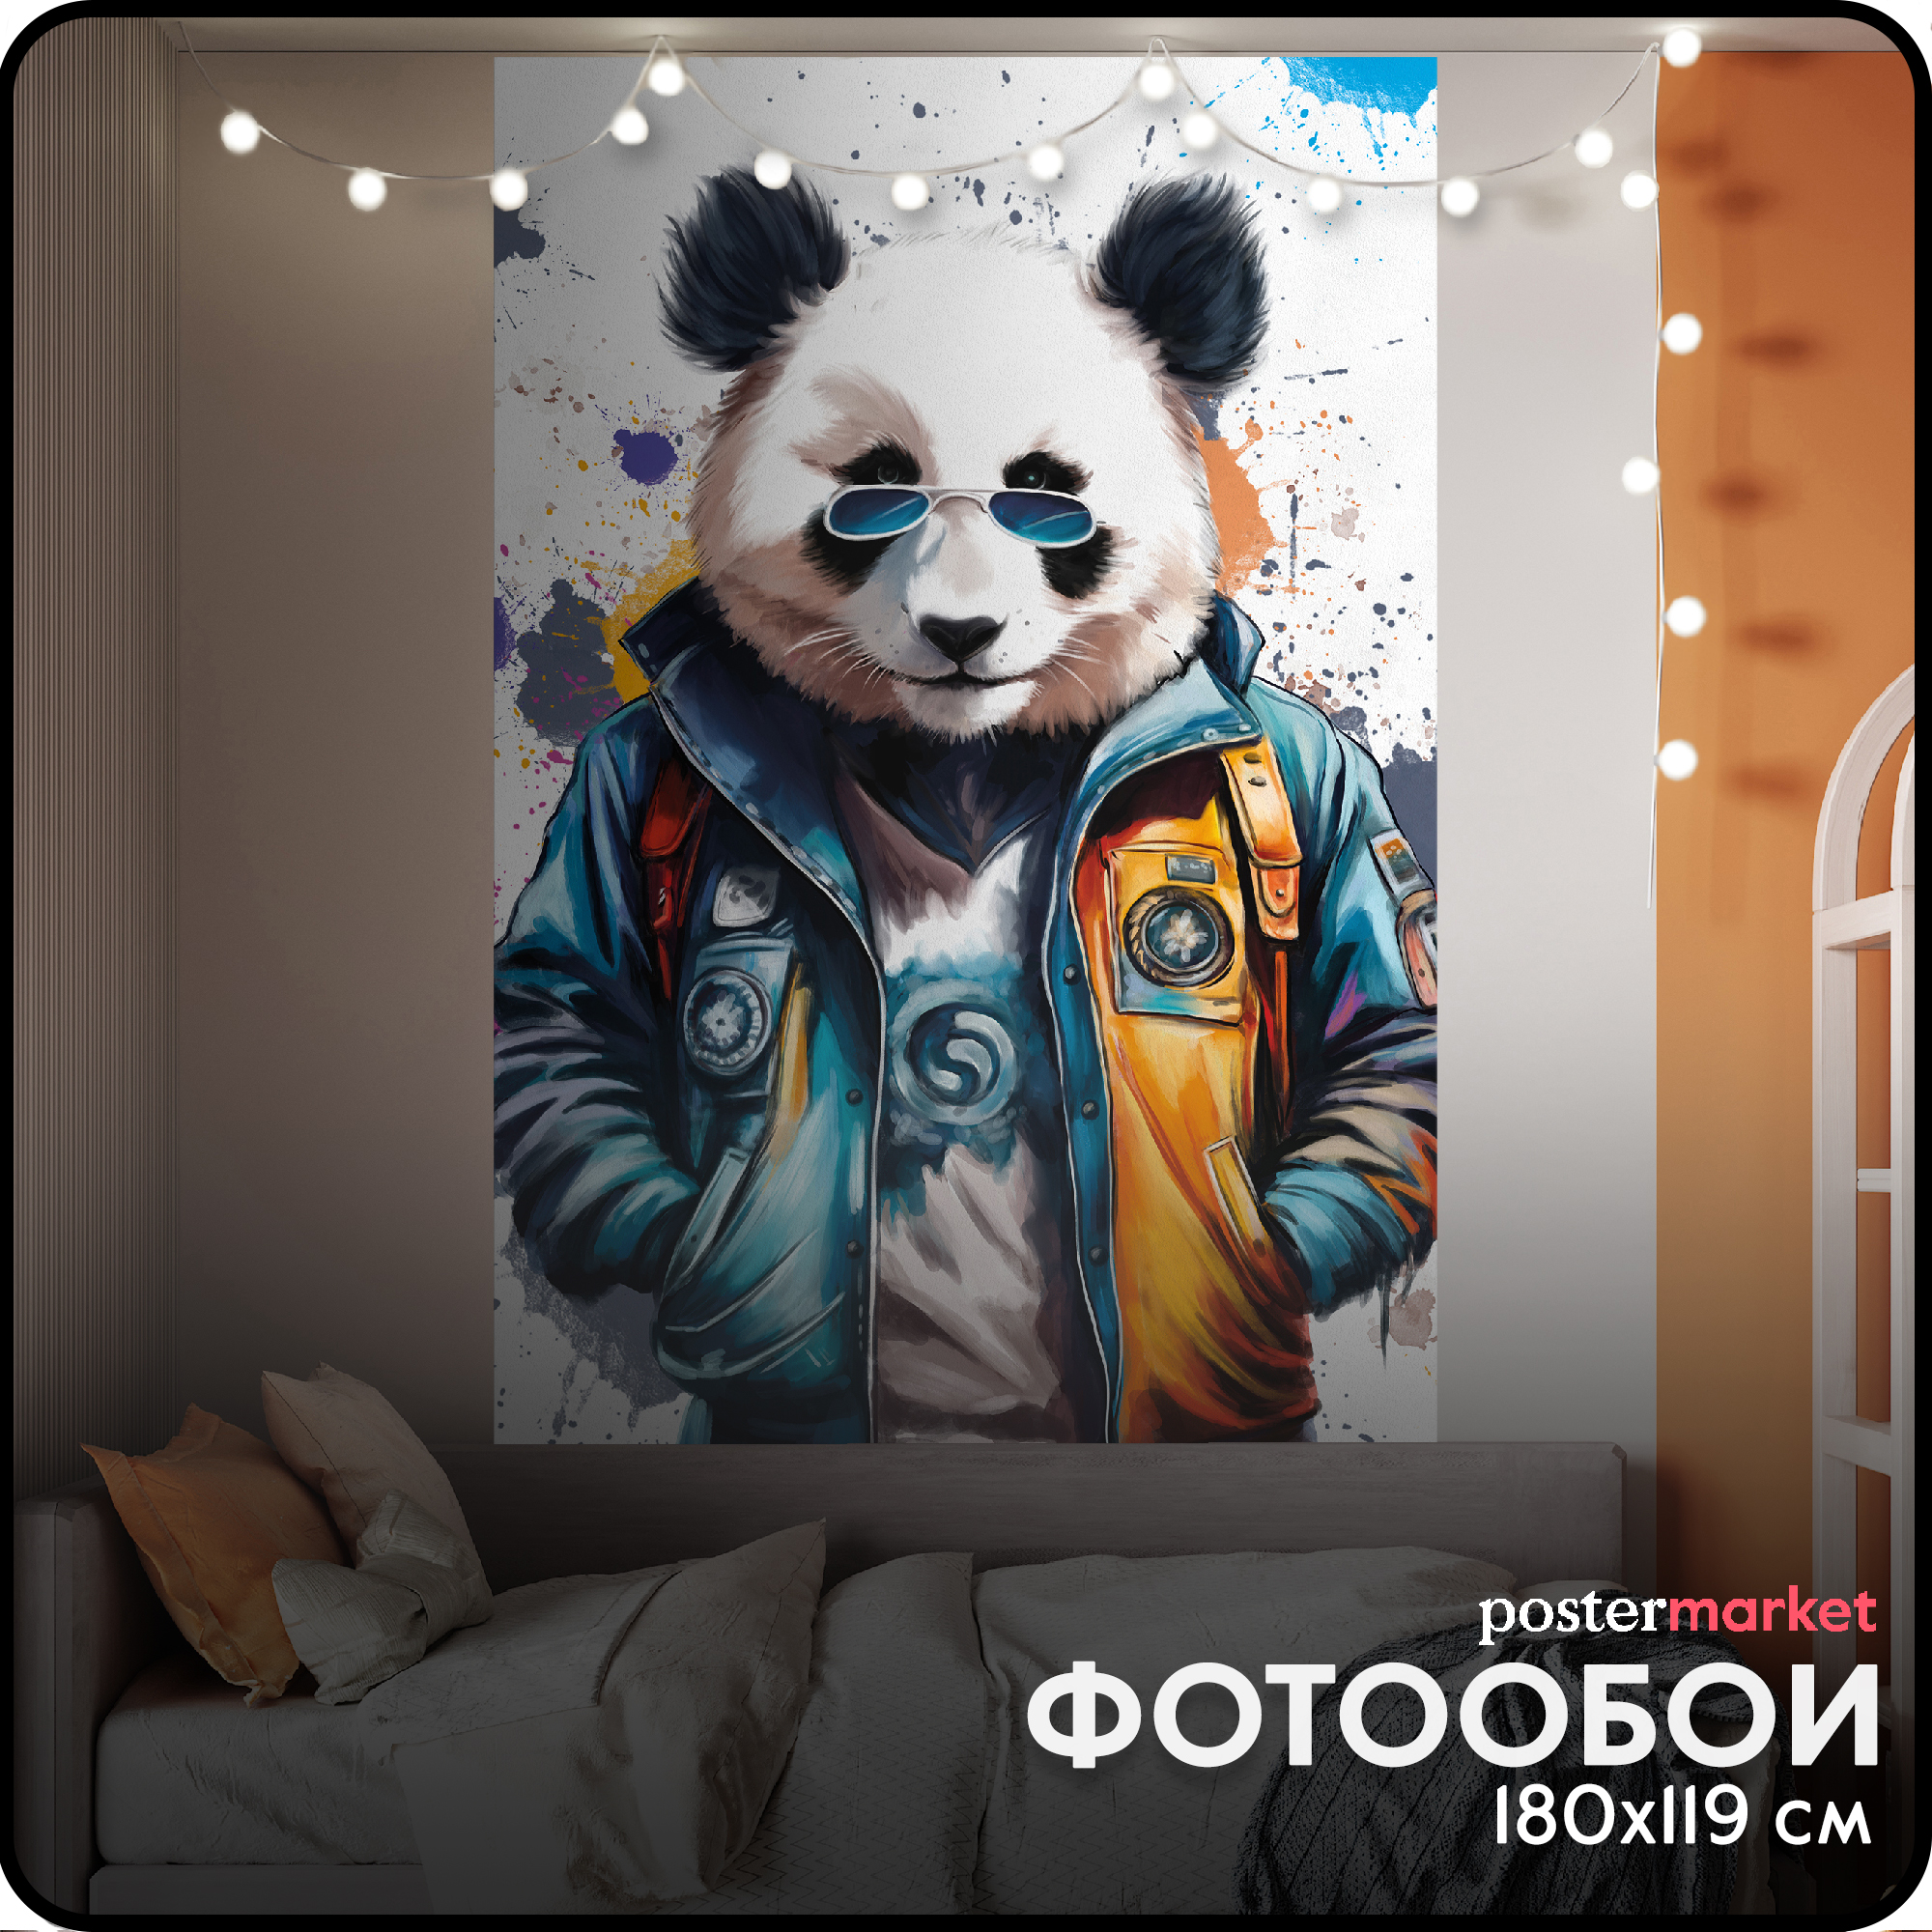 Фотообои детские бумажные Postermarket WM-517 Стильная панда 119х180 см блокнот панда в кепке